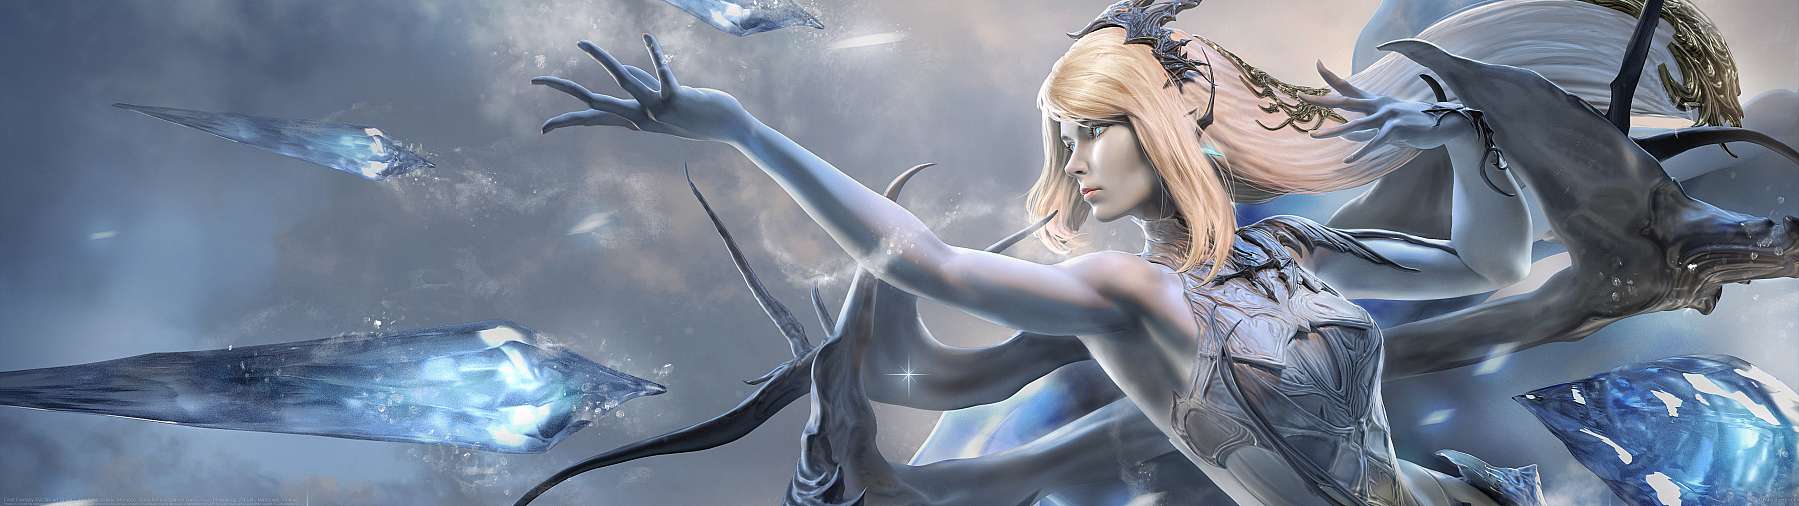 Final Fantasy XVI fan art Shiva ultralarge fond d'écran